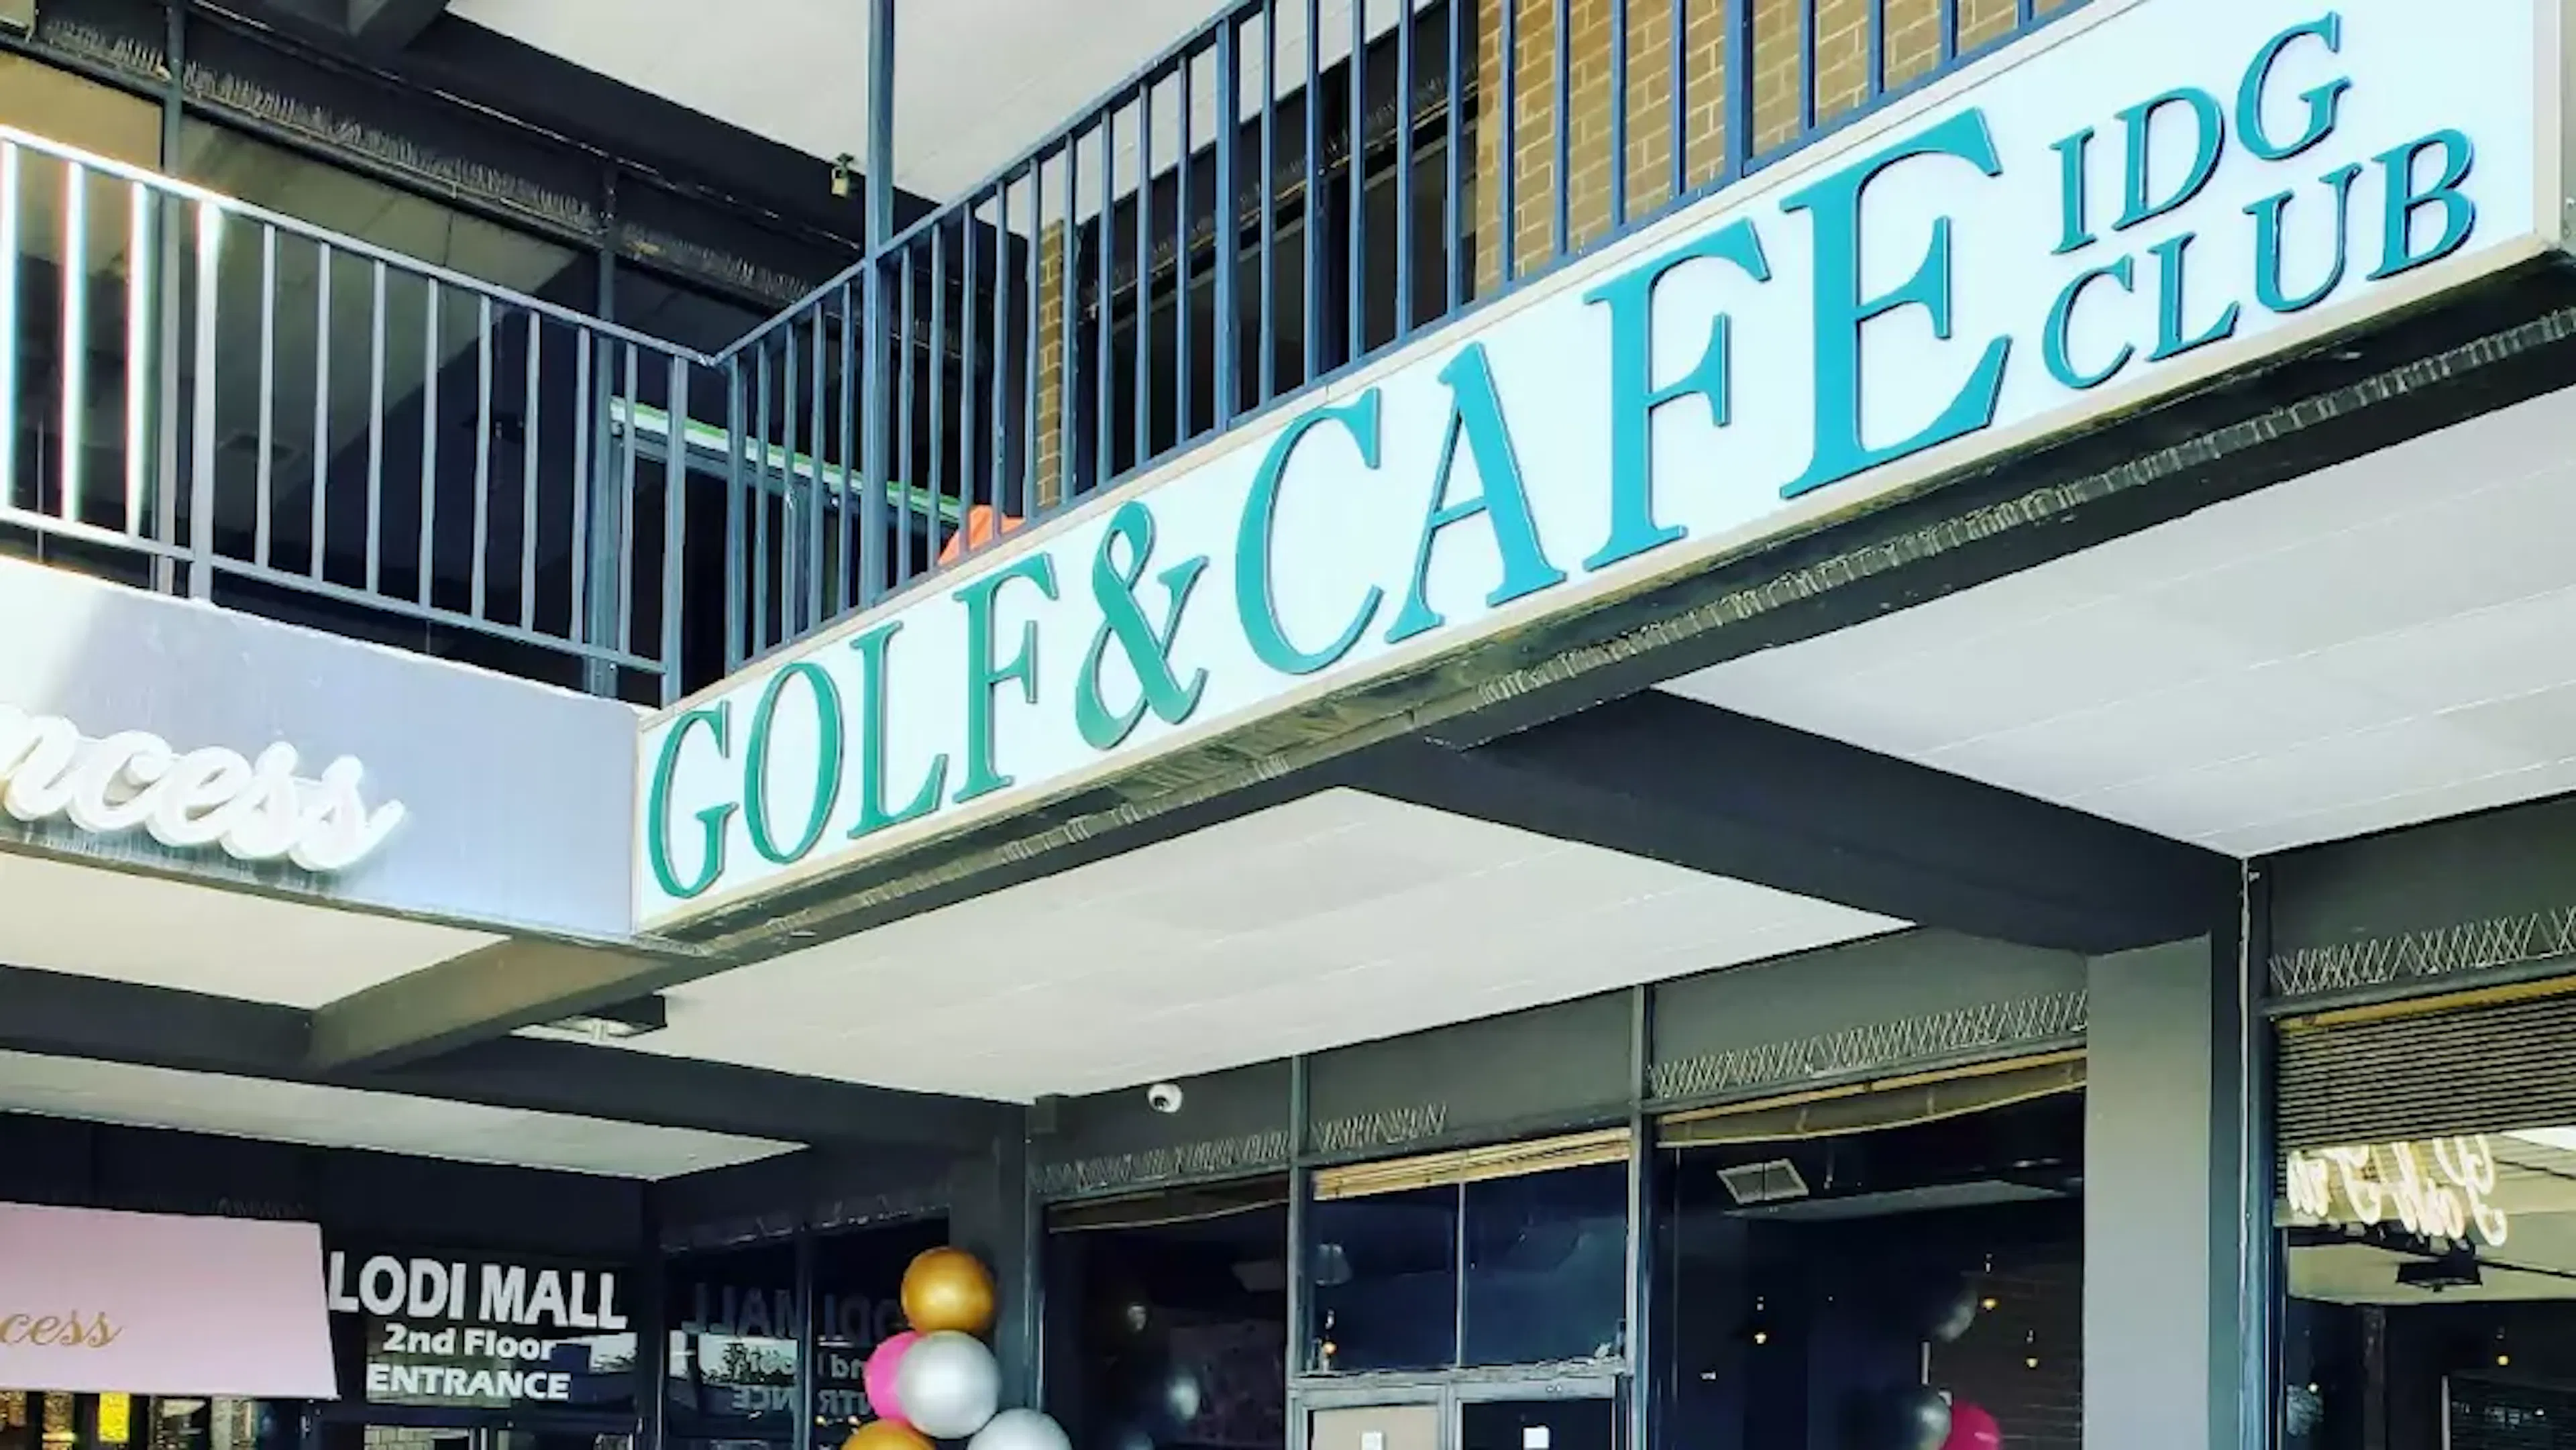 idg club golf & cafe